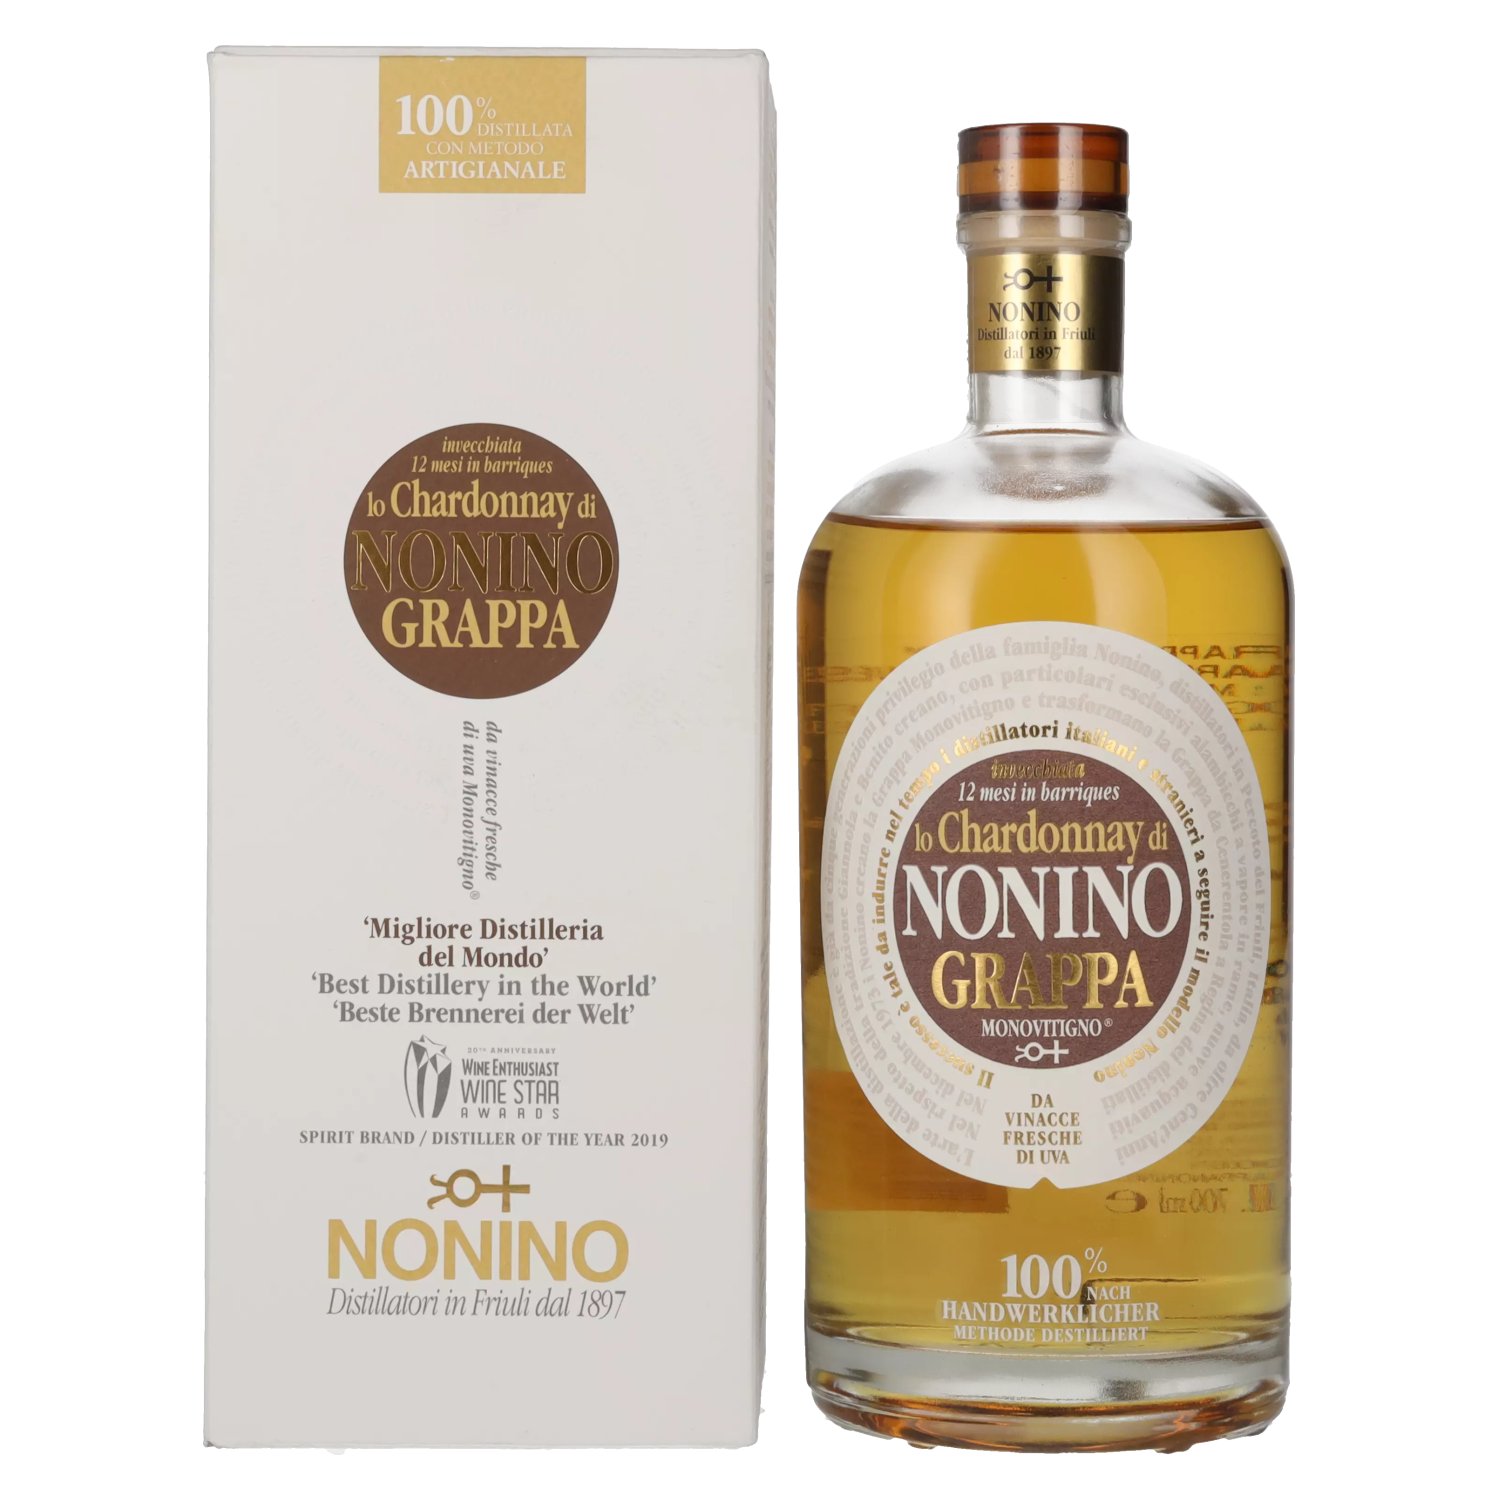 Nonino Grappa Chardonnay in Vol. 41% Barriques Giftbox 0,7l in